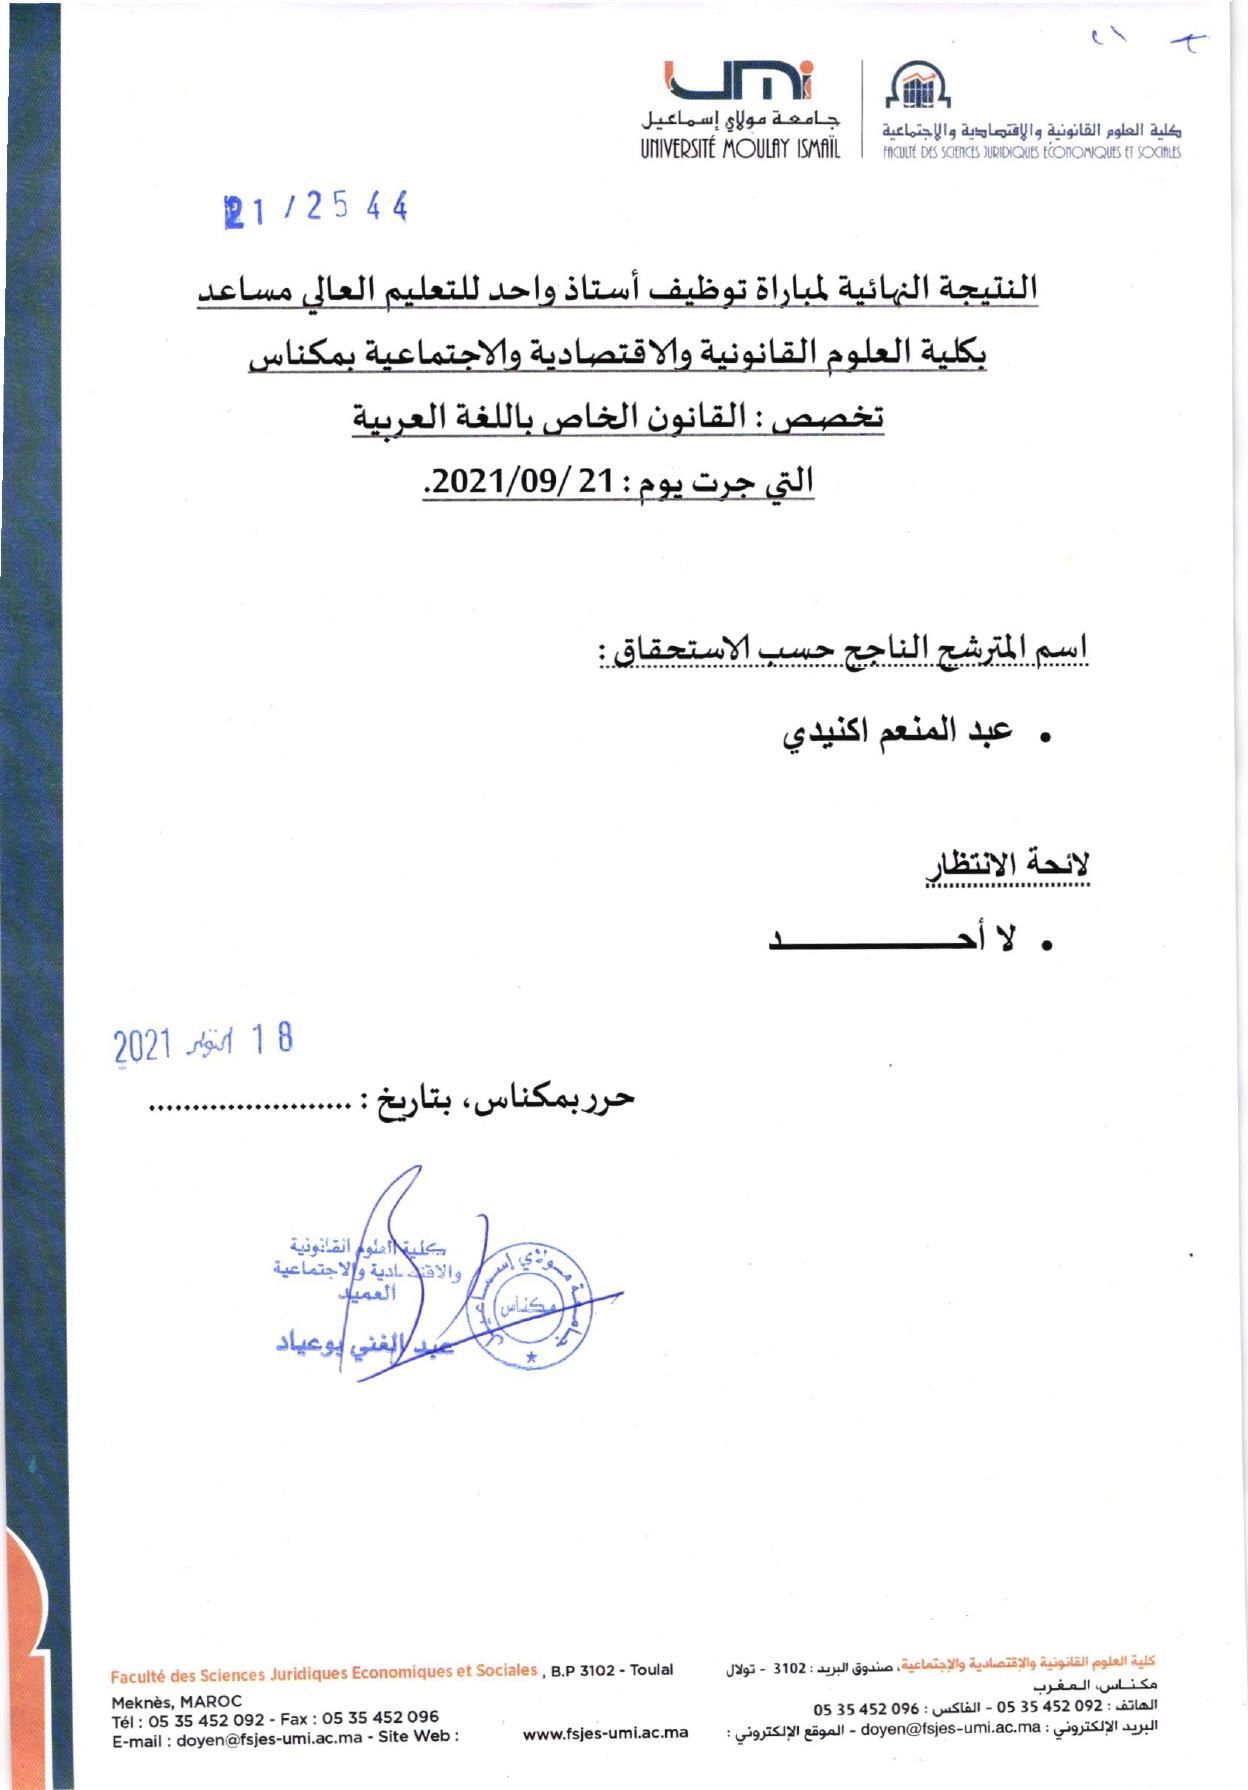 Résultat Final / Droit privé en langue arabe du 21.09.2021